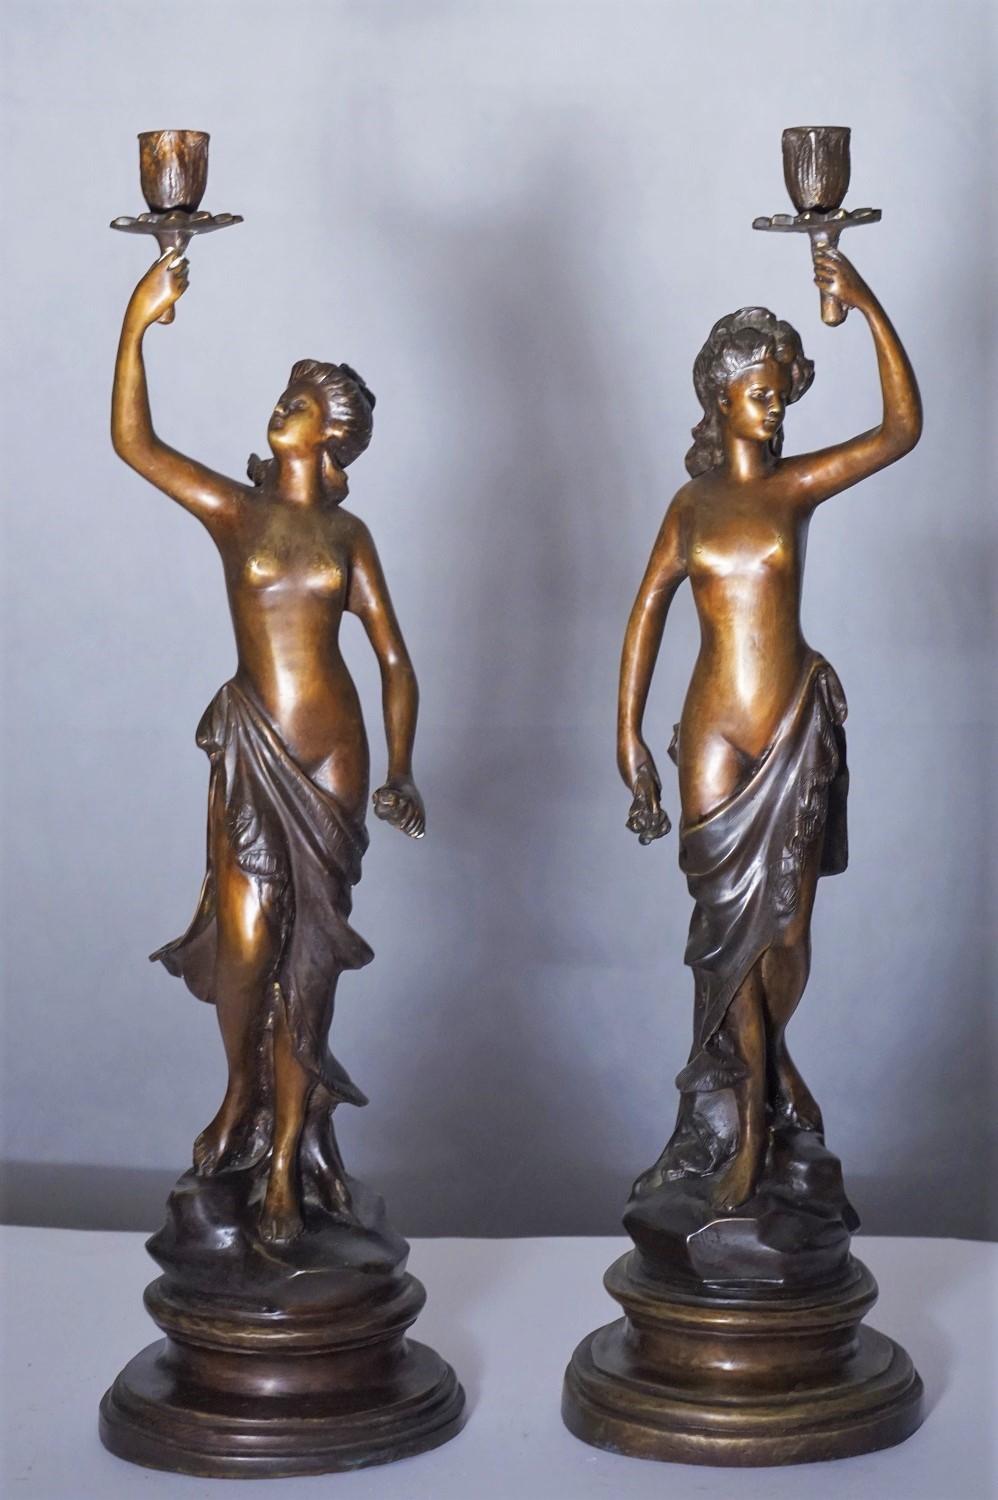 Ein Paar schwerer patinierter Bronzeskulpturen-Kandelaber, Frankreich Mitte des 19. Zwei weibliche Skulpturen, die einen Kerzenständer halten, stehen auf einem runden Bronzesockel, signiert vom Künstler.
Maßnahmen:
Höhe 21 in / 54 cm
Durchmesser